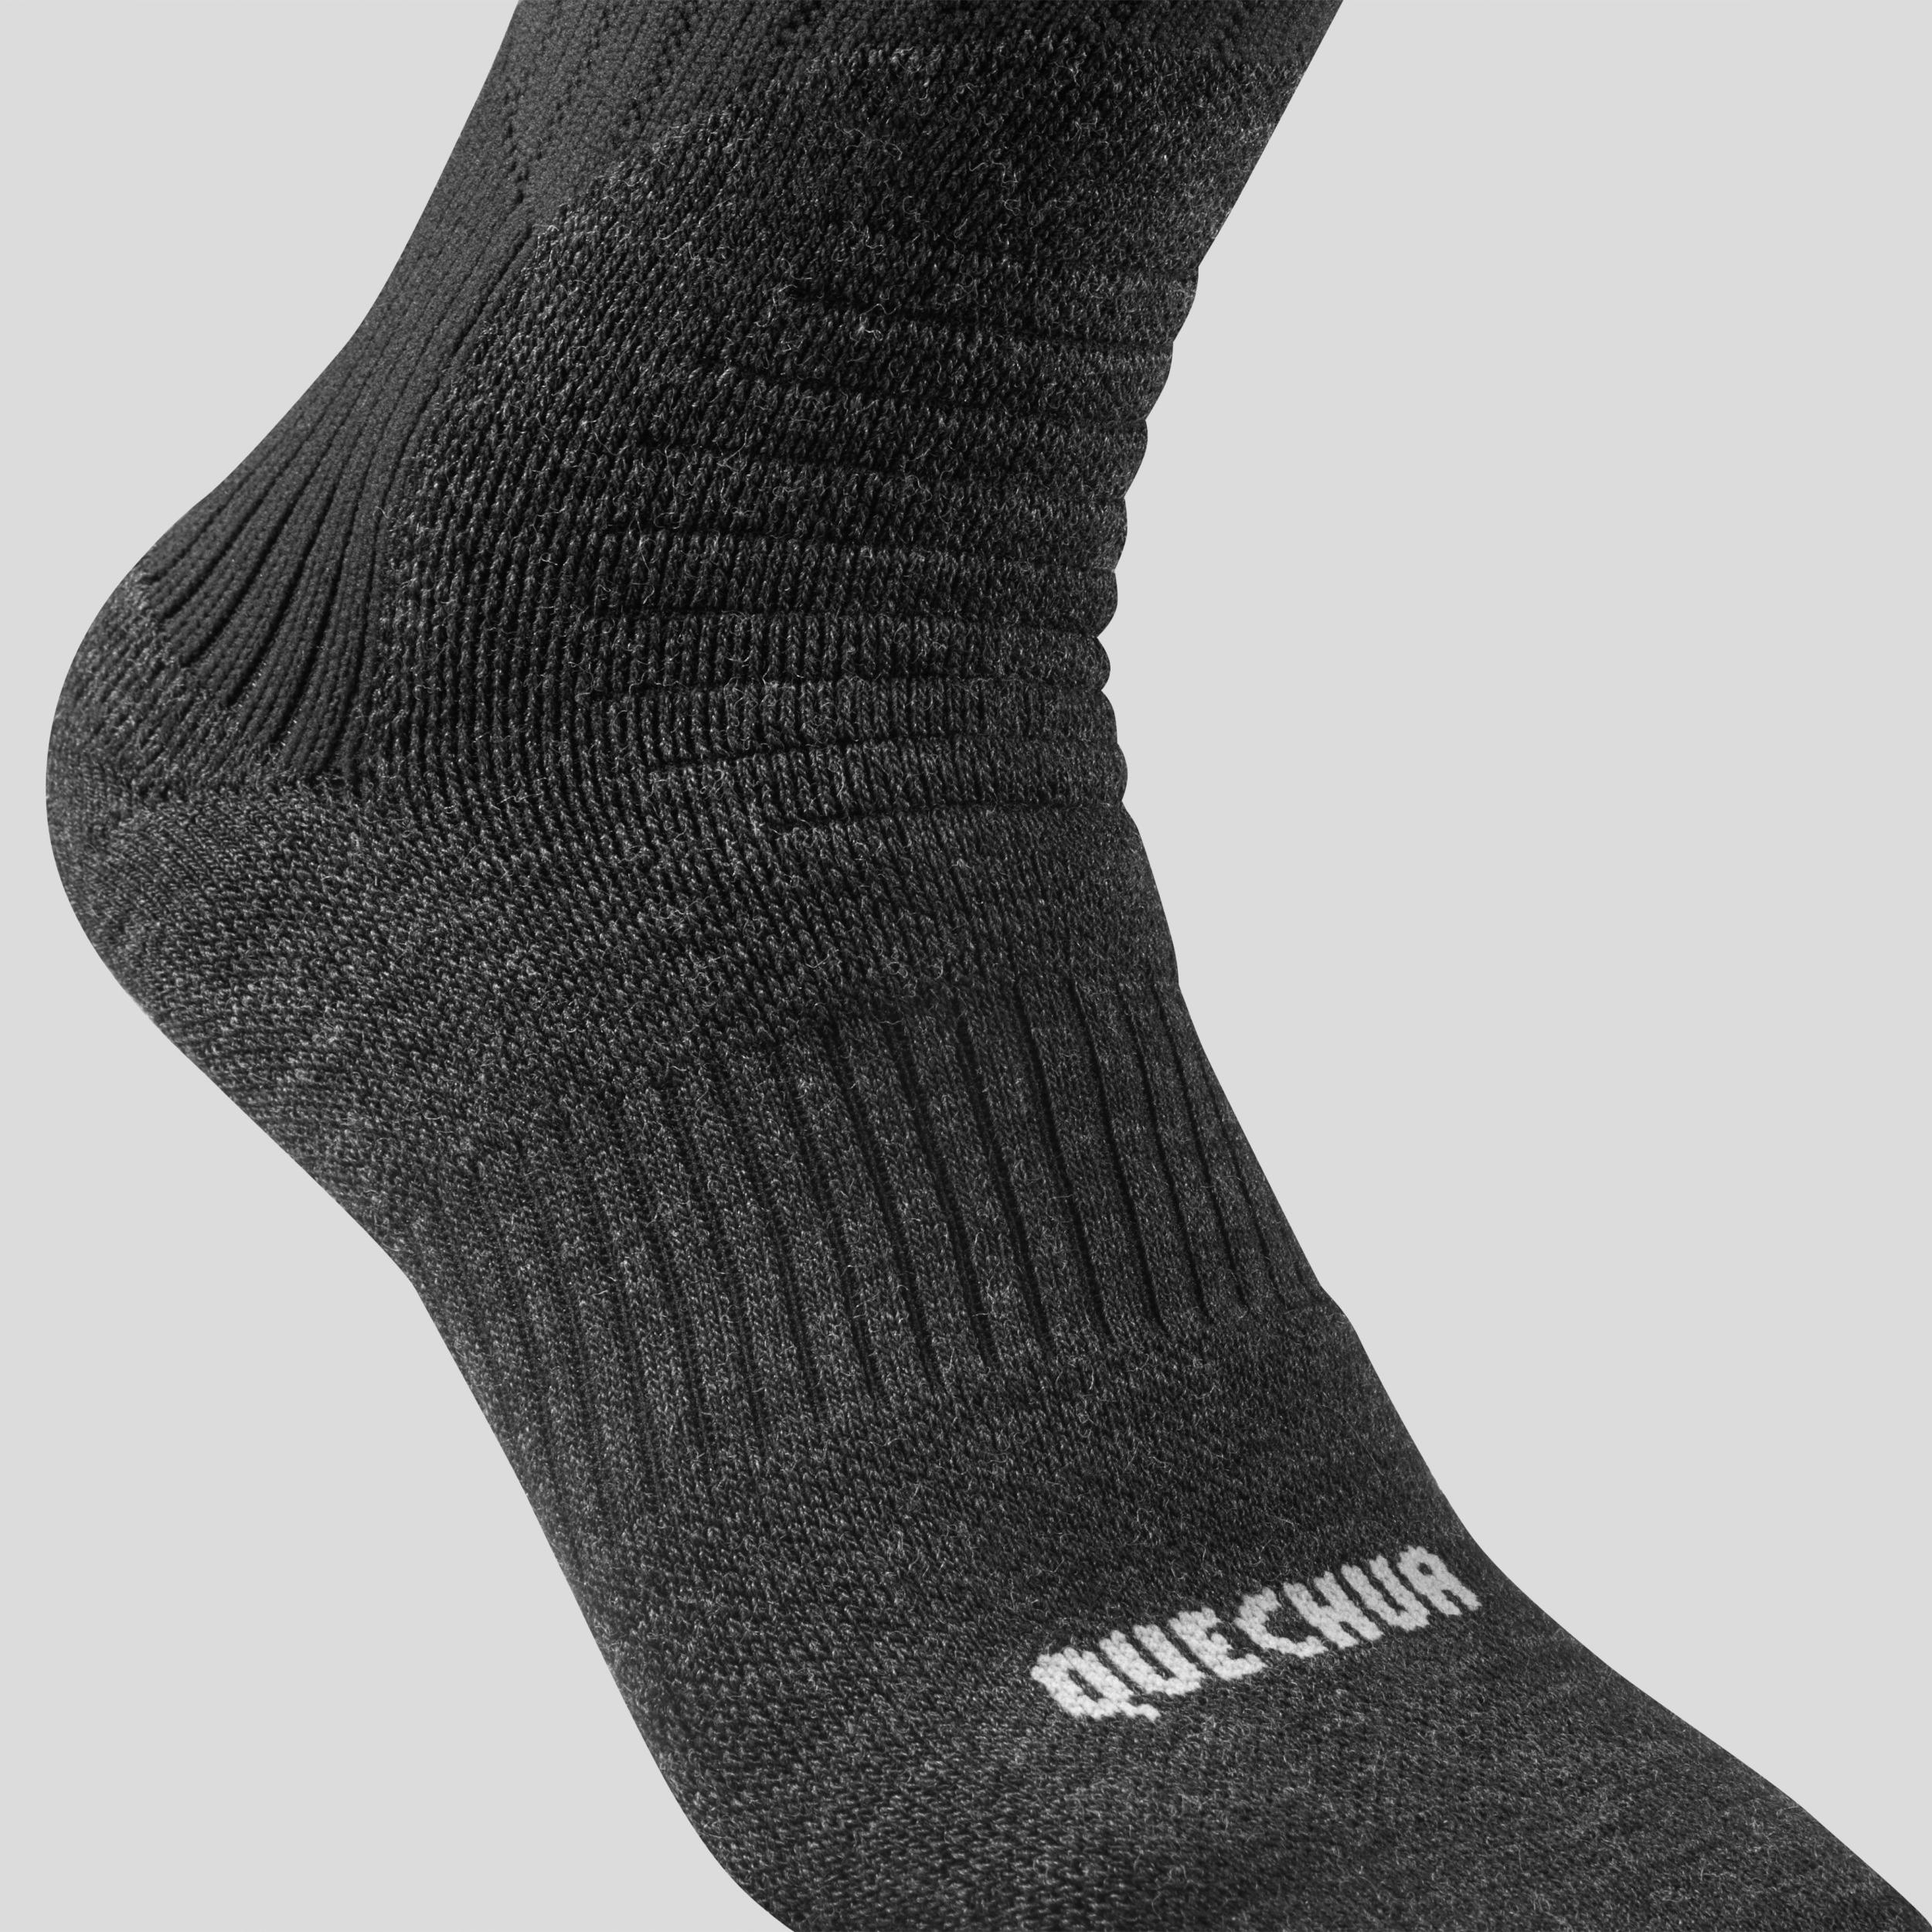 Warm Hiking Socks - SH100 X-WARM HAUTES - 2 Pairs 5/5